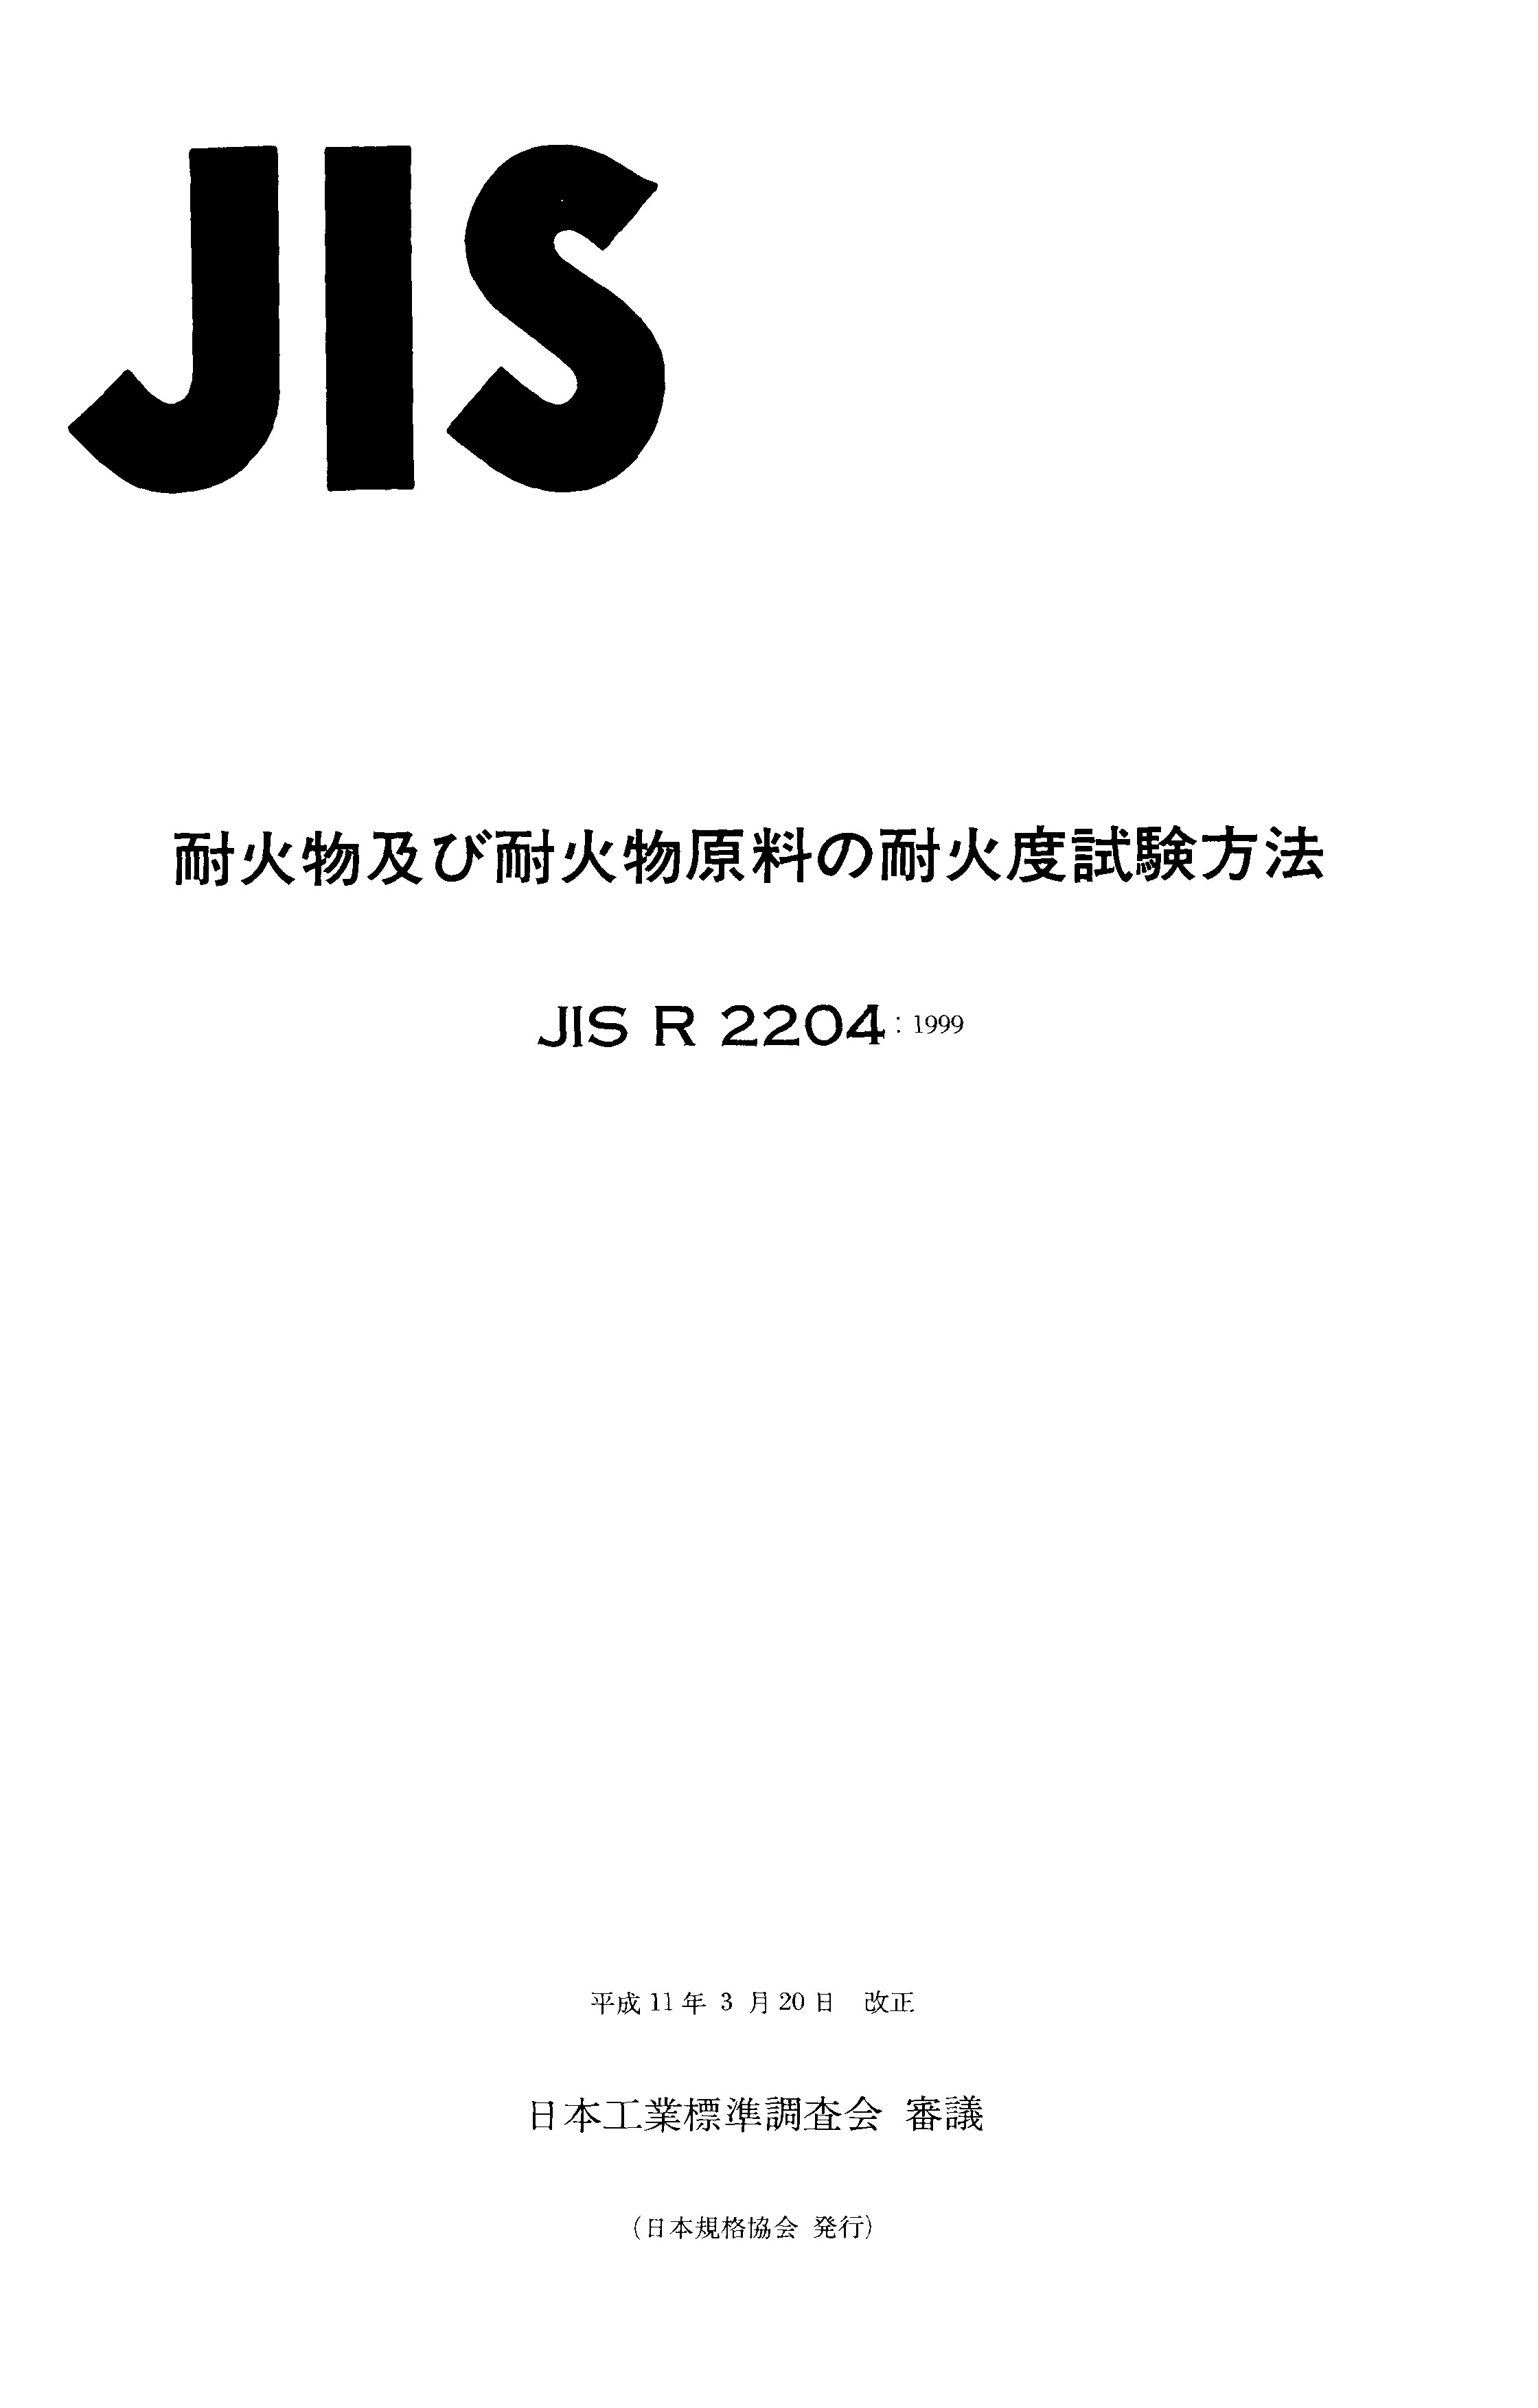 JIS R 2204:1999